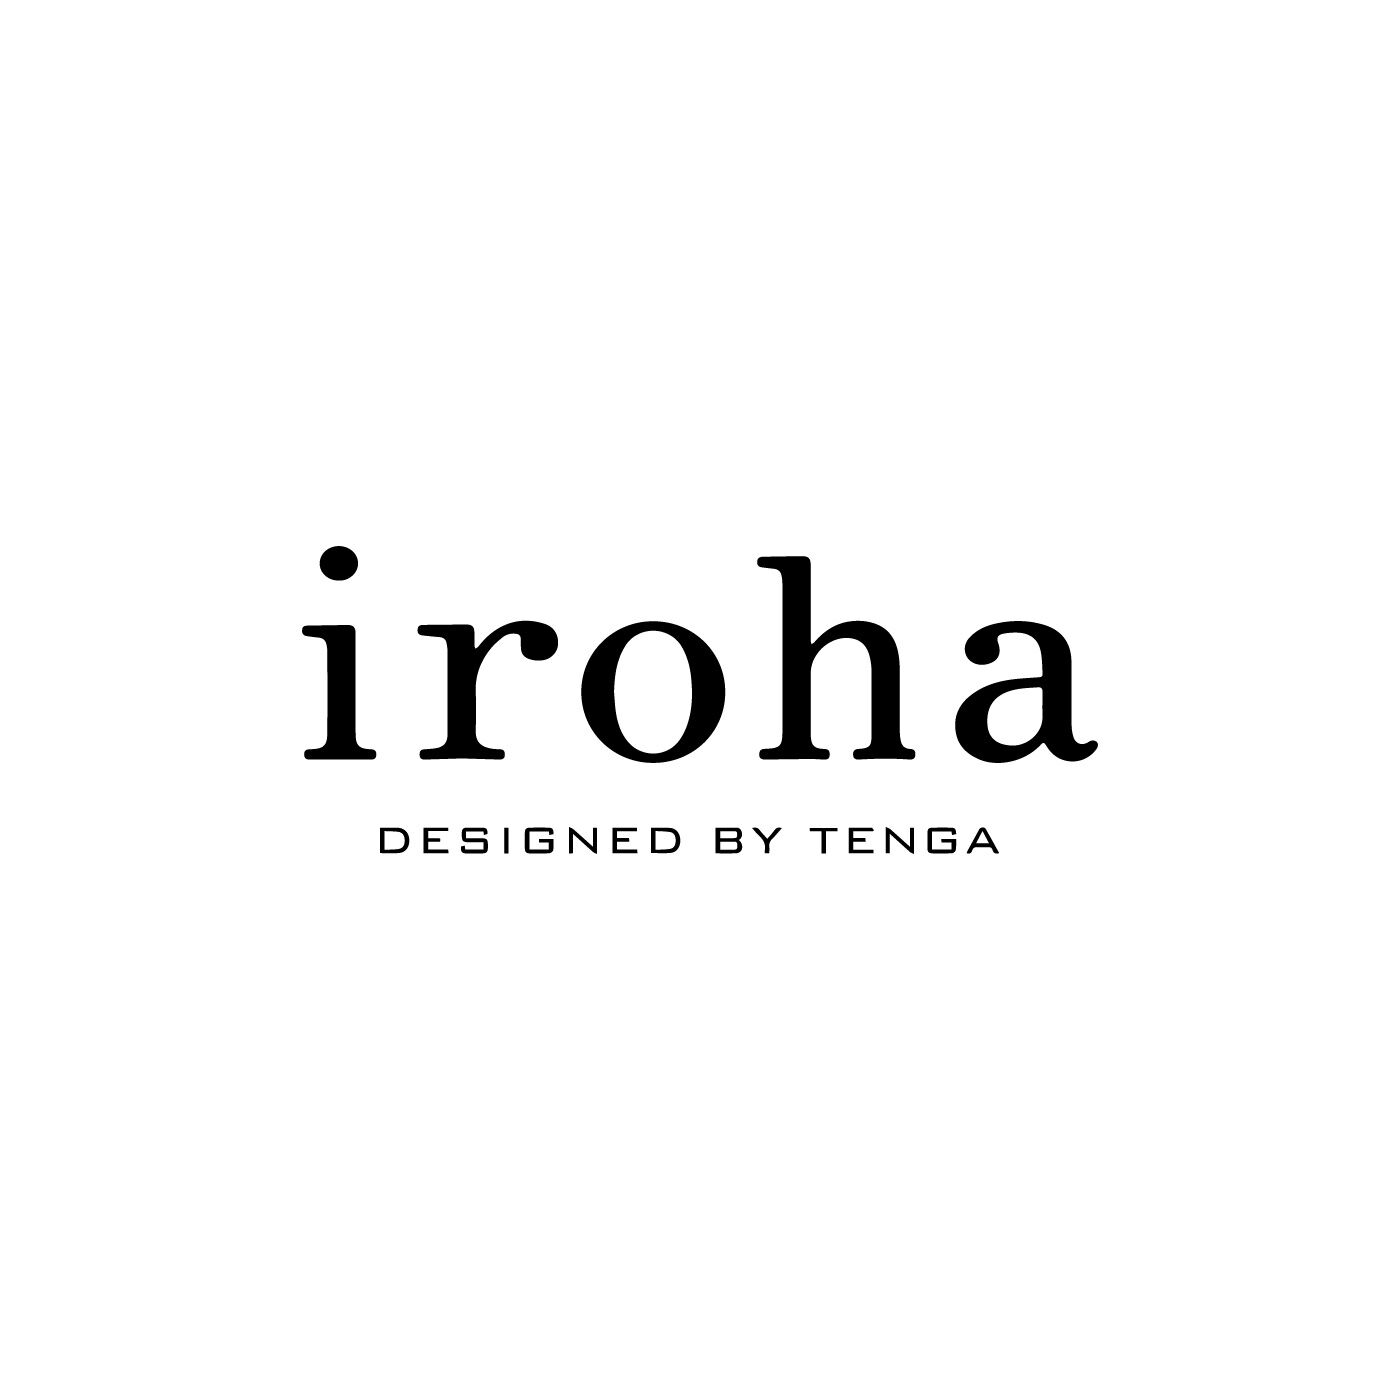 フェリシモコレクション|iroha　SMOOTH　GEL|寝る前にパックをするように、セルフケアのひとつとして、からだが求める「気持ちよさ」に応えることは、もっと大切にしてもいいこと。そんな思いで2013年3月から「iroha」はスタートしました。